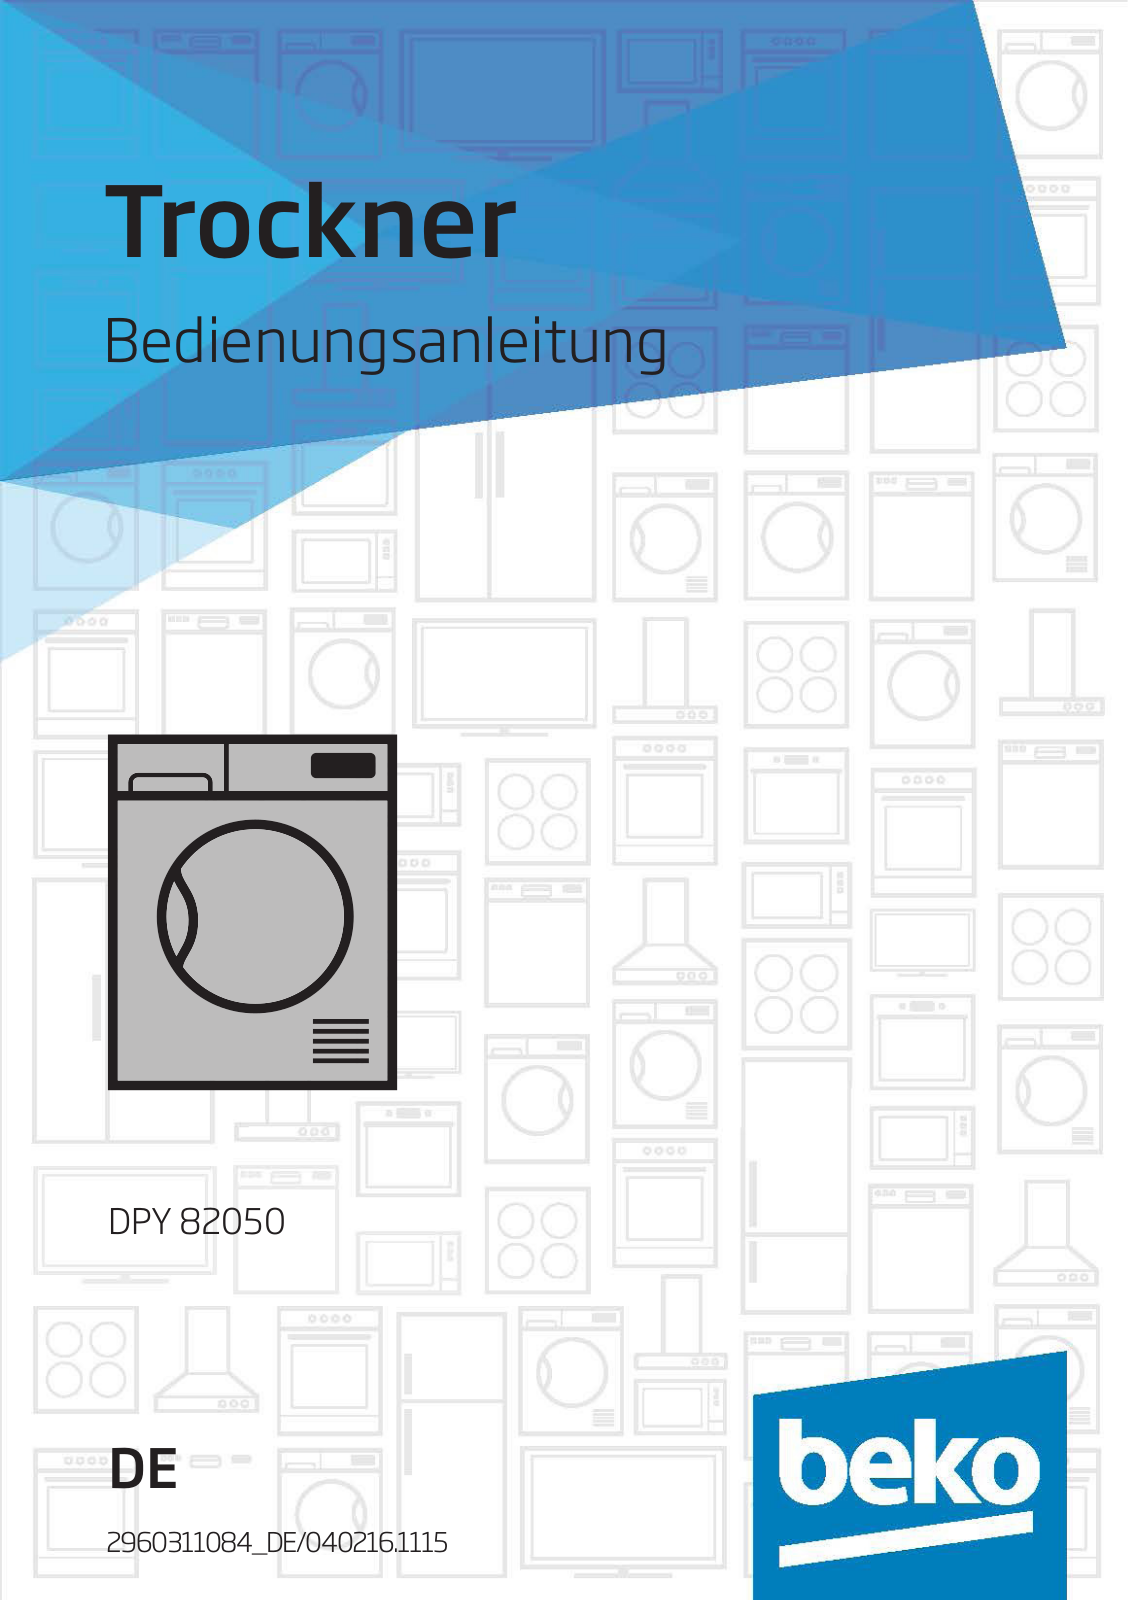 Beko DPY 82050 User Manual